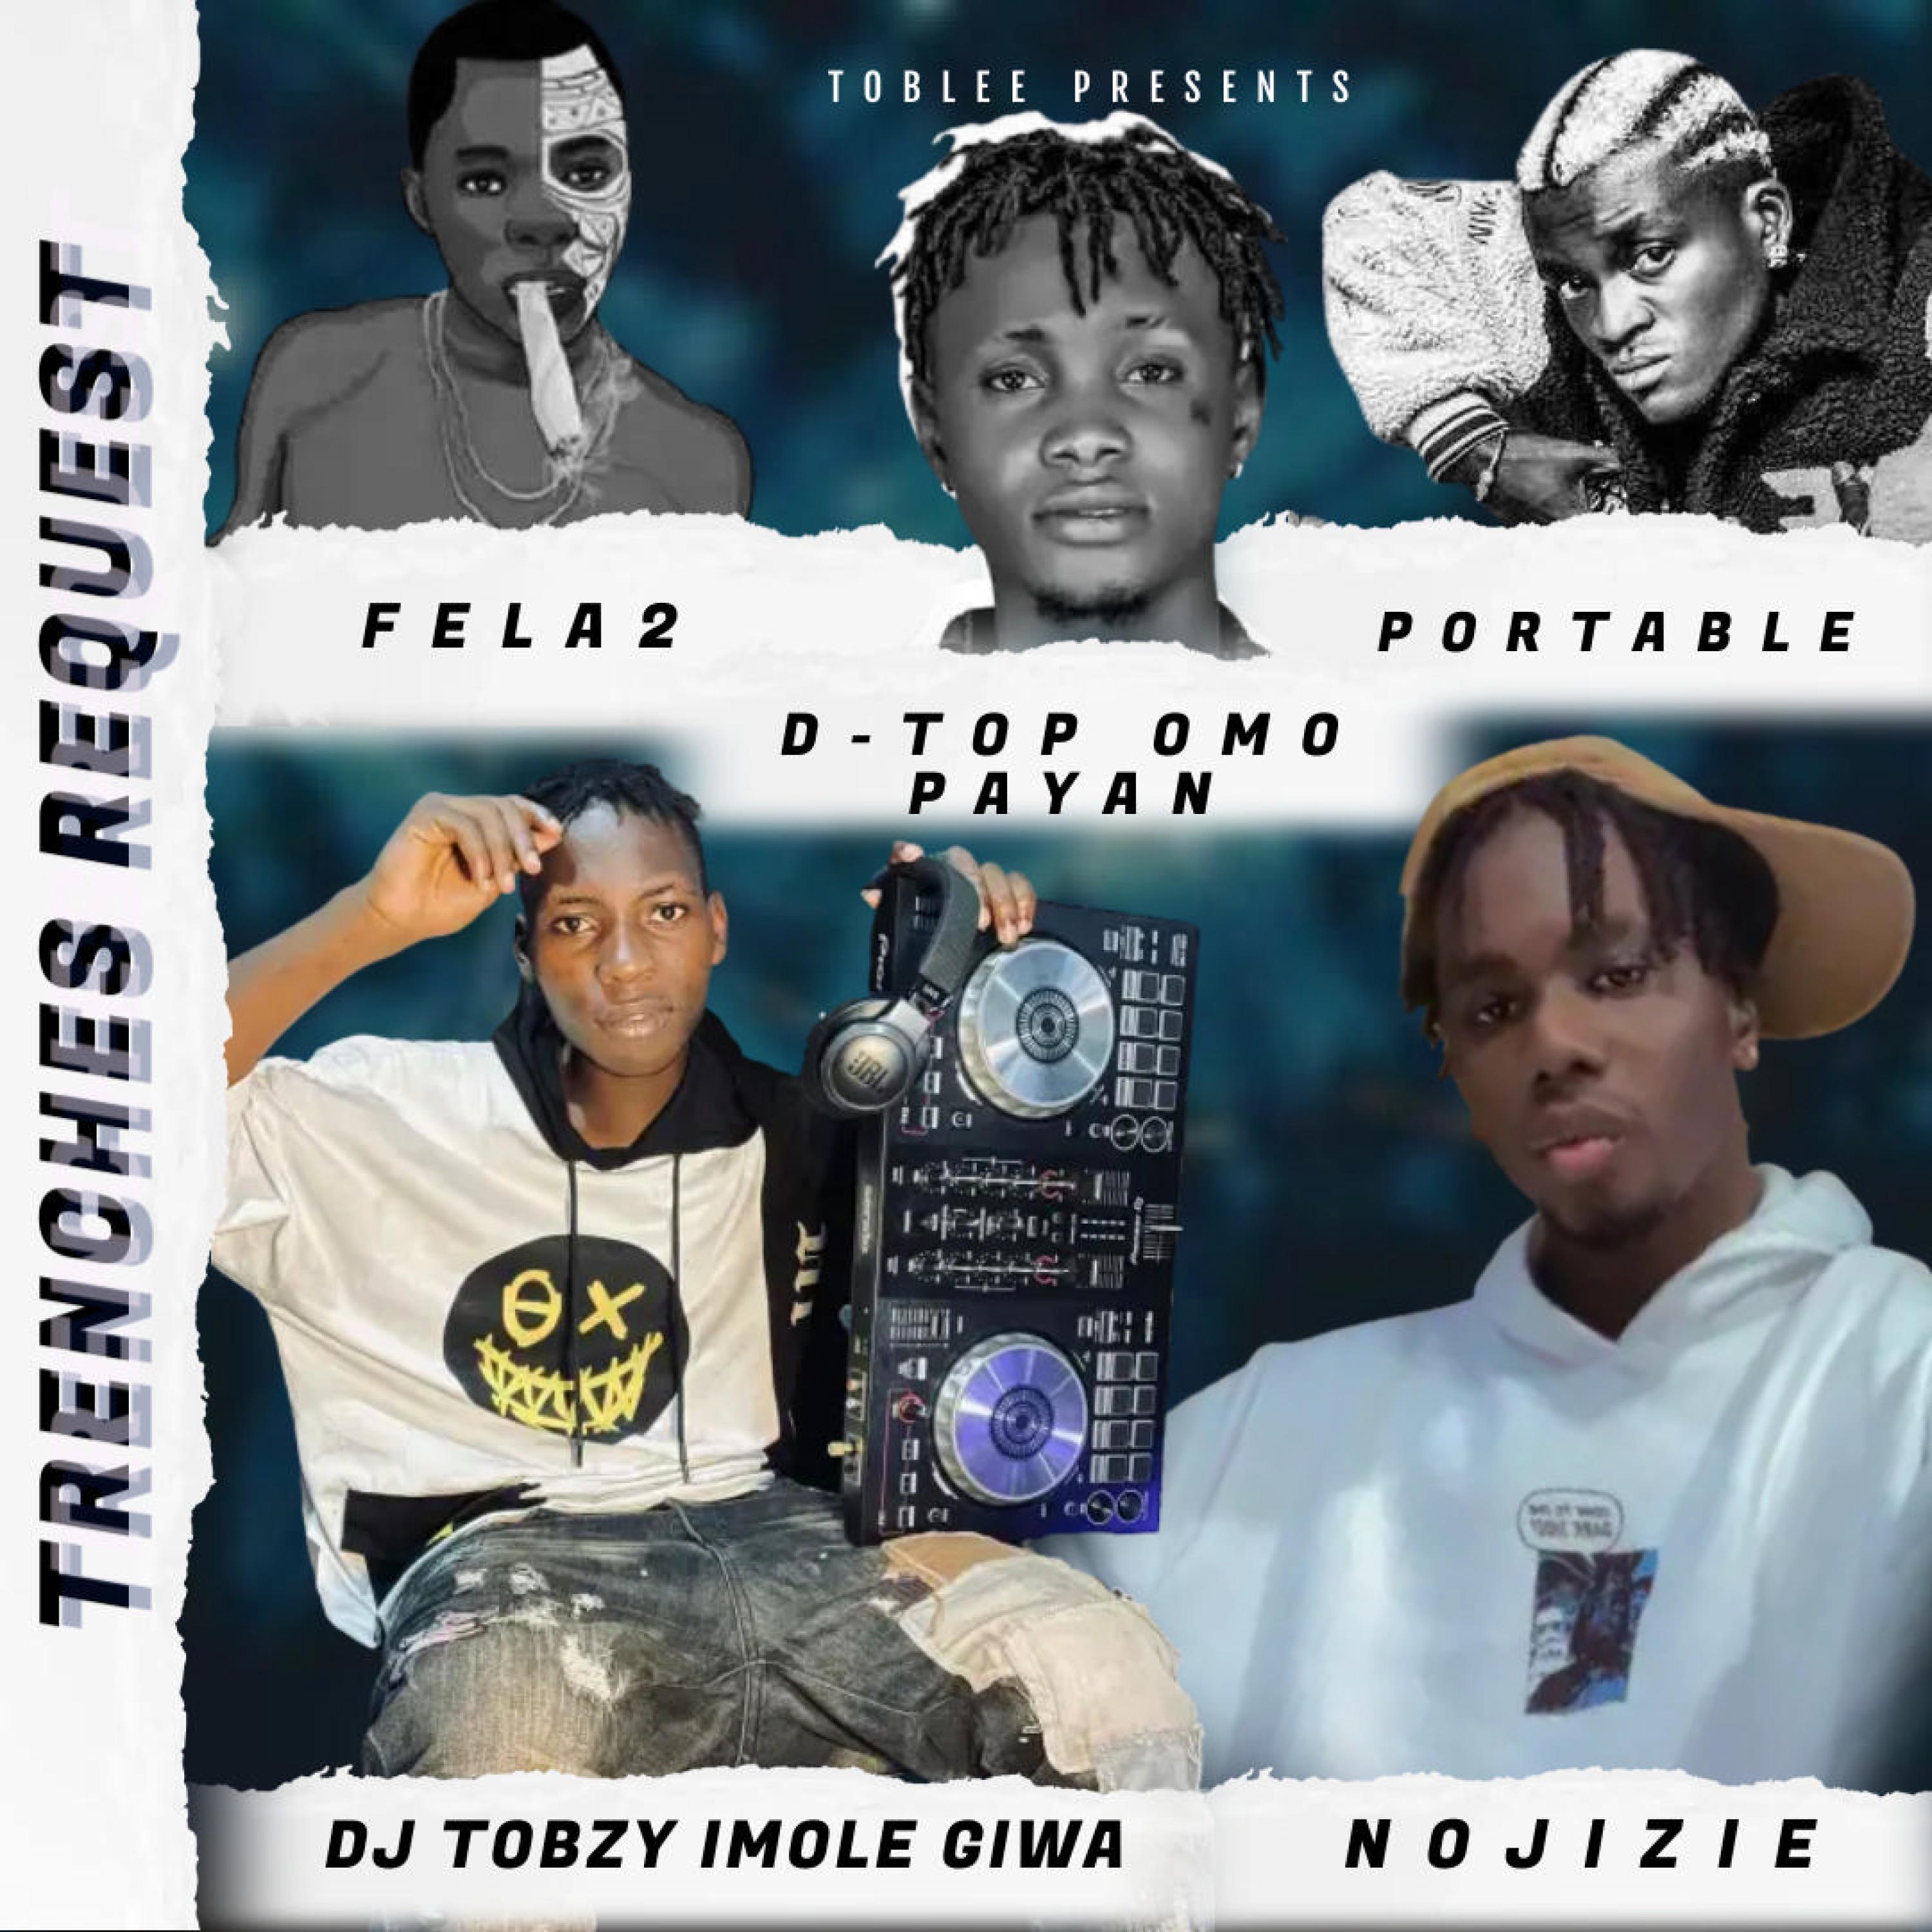 DJ TOBZY IMOLE GIWA - DO OR DIE (GARA) (feat. DJ JAMZY IMOLE MEIRAN, DJ SLIMFIT, DJ MAYORKAY & NOJIZIE)